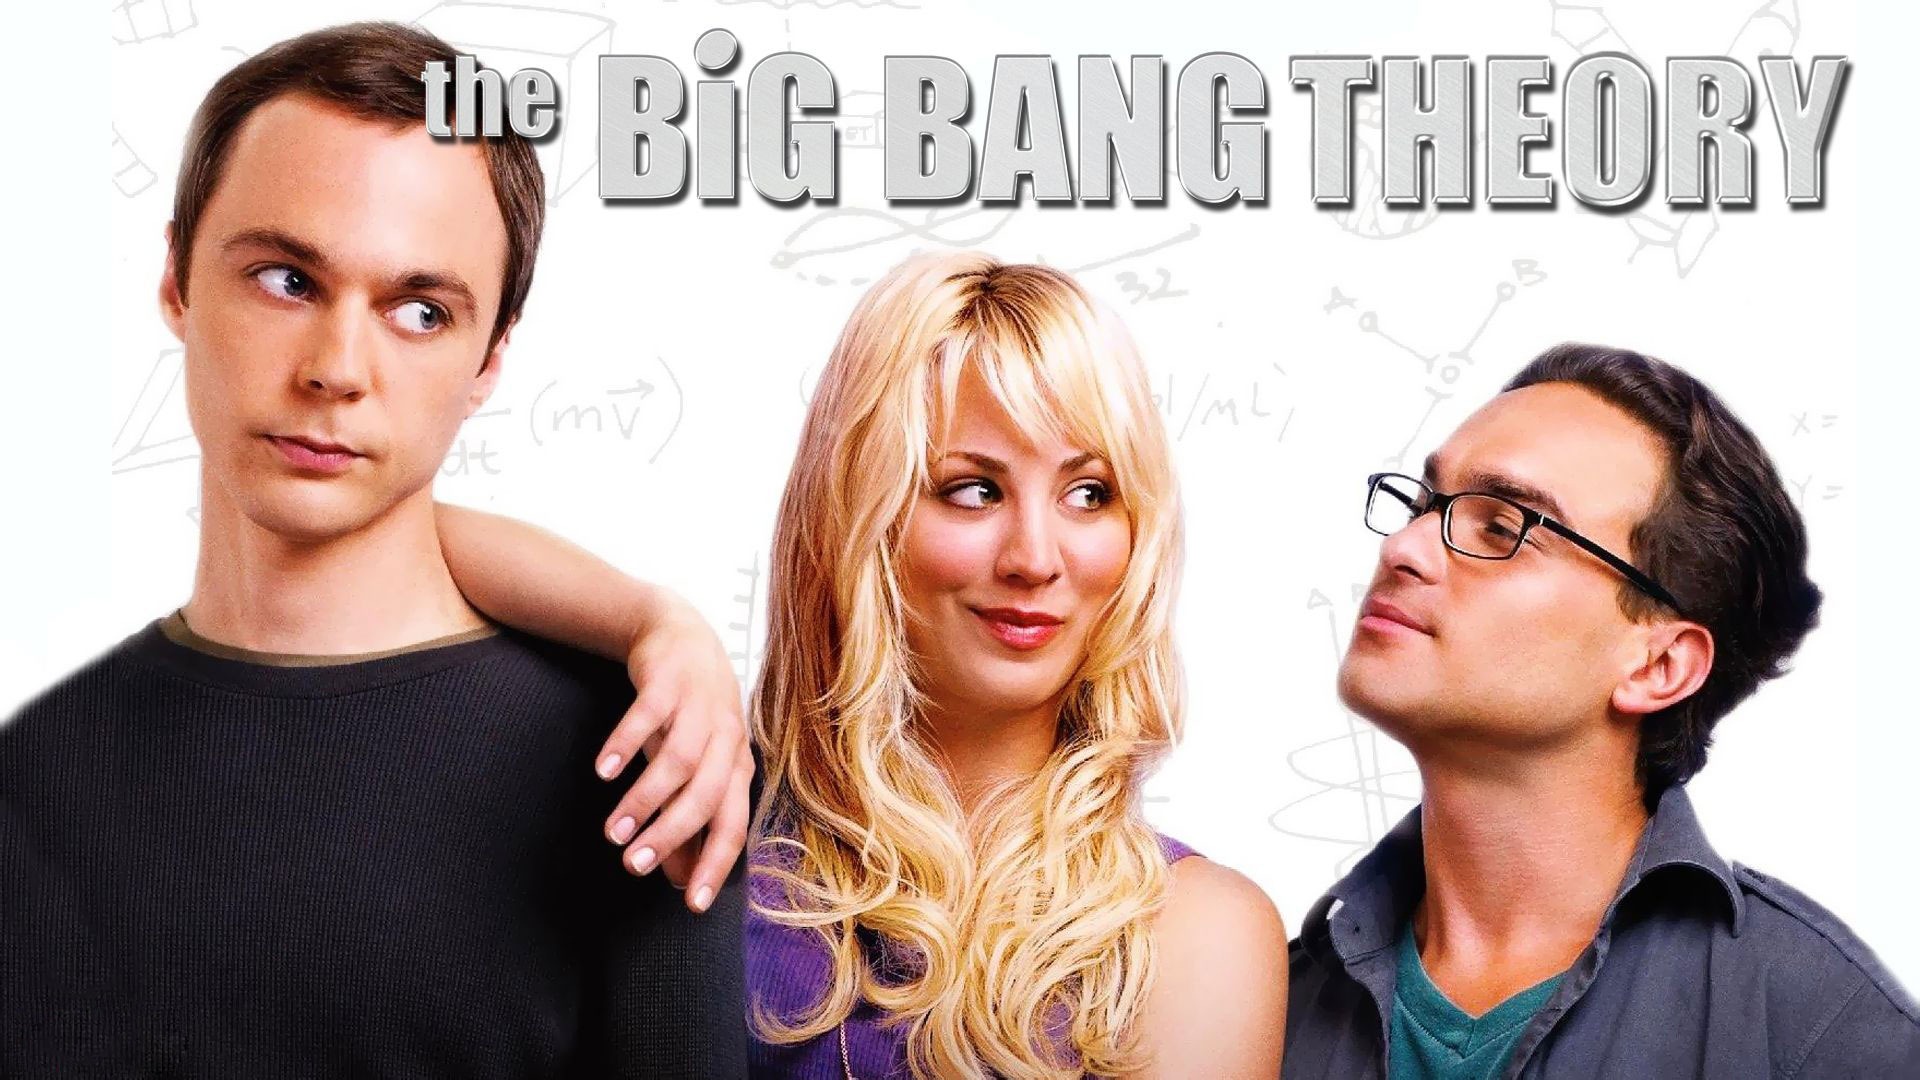 The Big Bang Theory 生活大爆炸 电视剧高清壁纸21 - 1920x1080